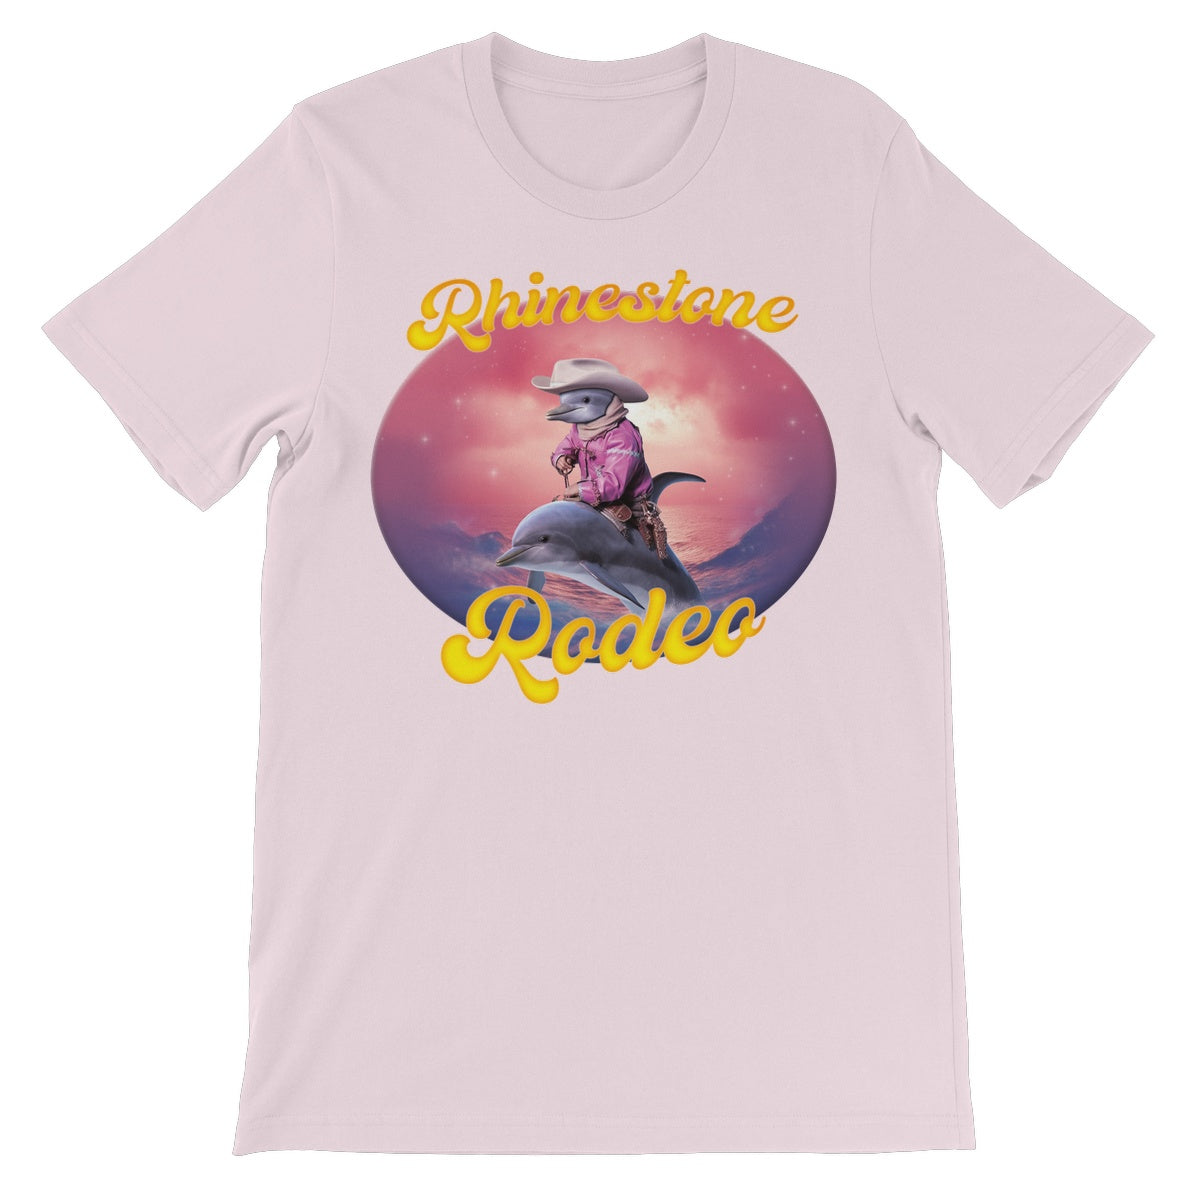 Rhinestone Rodeo Unisex T-Shirt